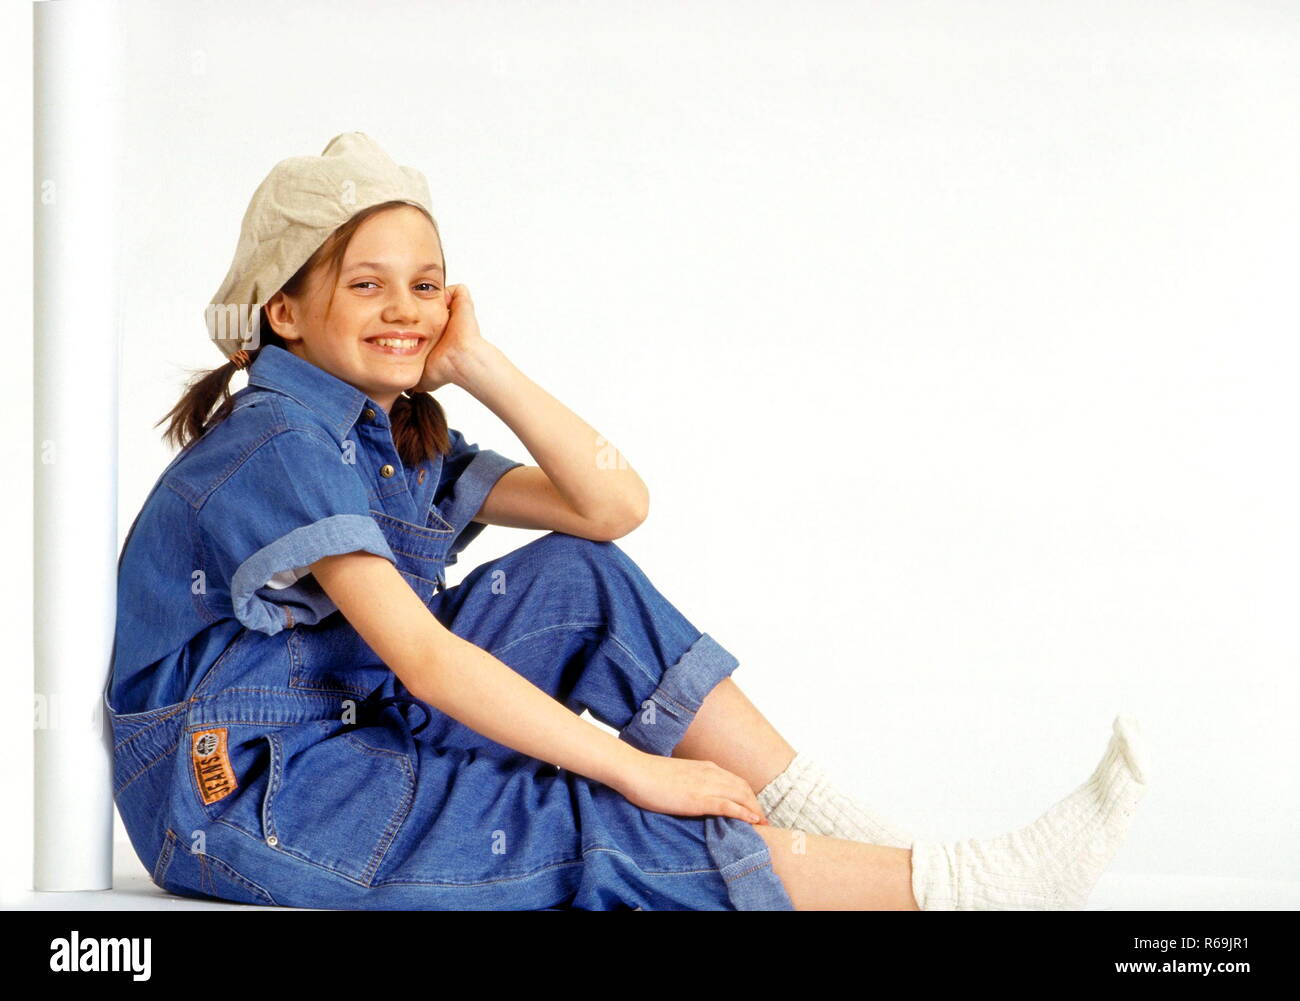 Ganzfigur, Maedchen, 11 Jahre, braune Zoepfe, bekleidet mit Kappe, Jeans  Hemd und Latzhose und weissen Socken, sitzt grinsend an eine weisse Saeule  gelehnt Stock Photo - Alamy